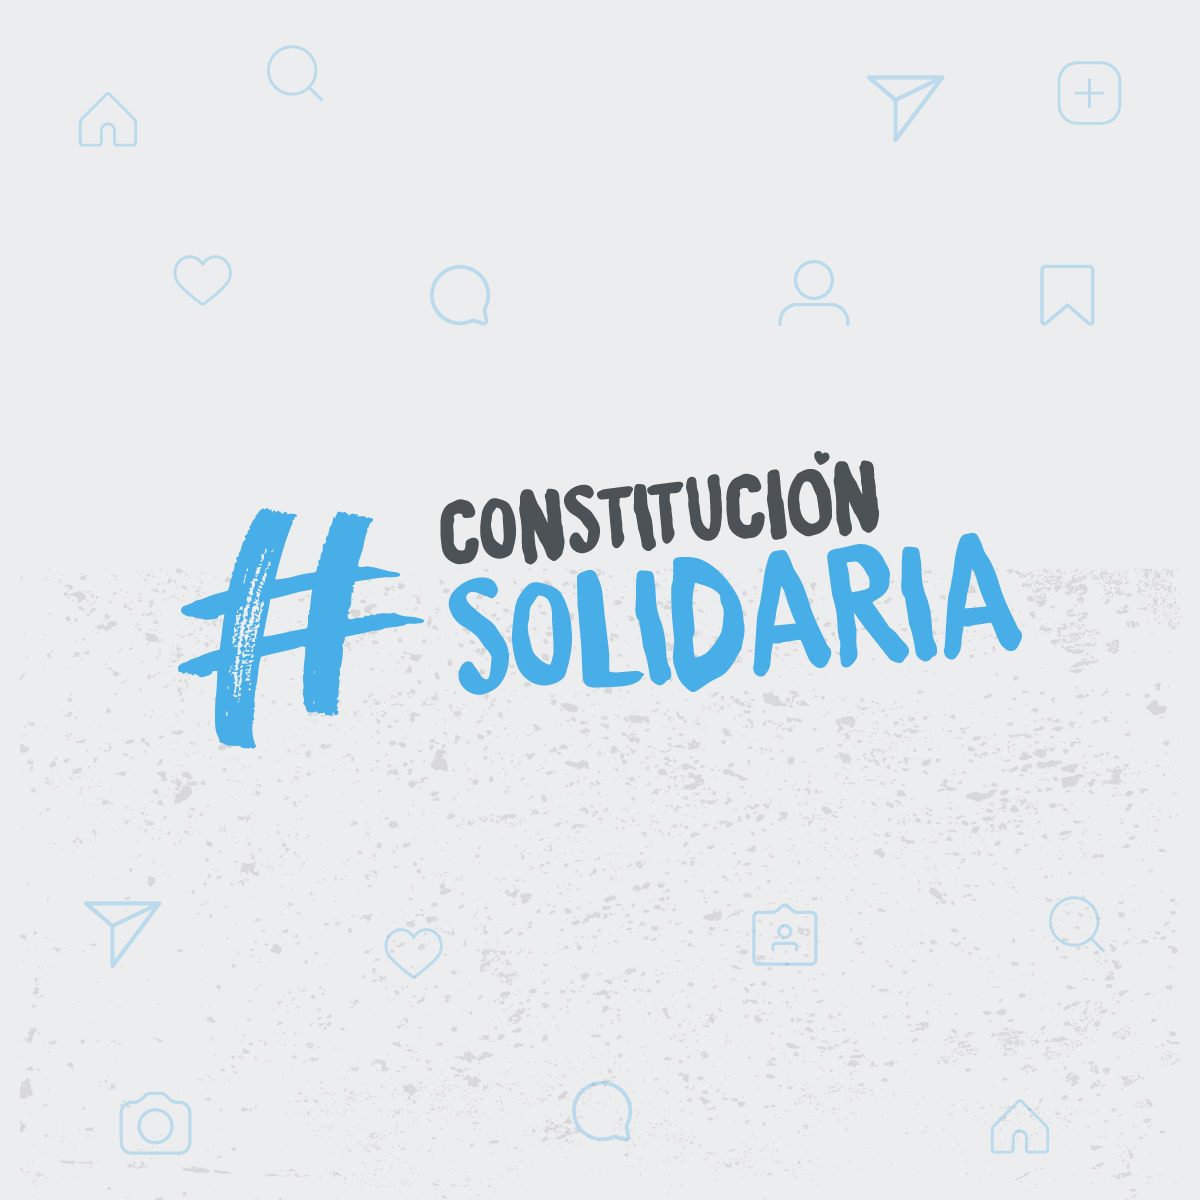 Solidarity Constitution